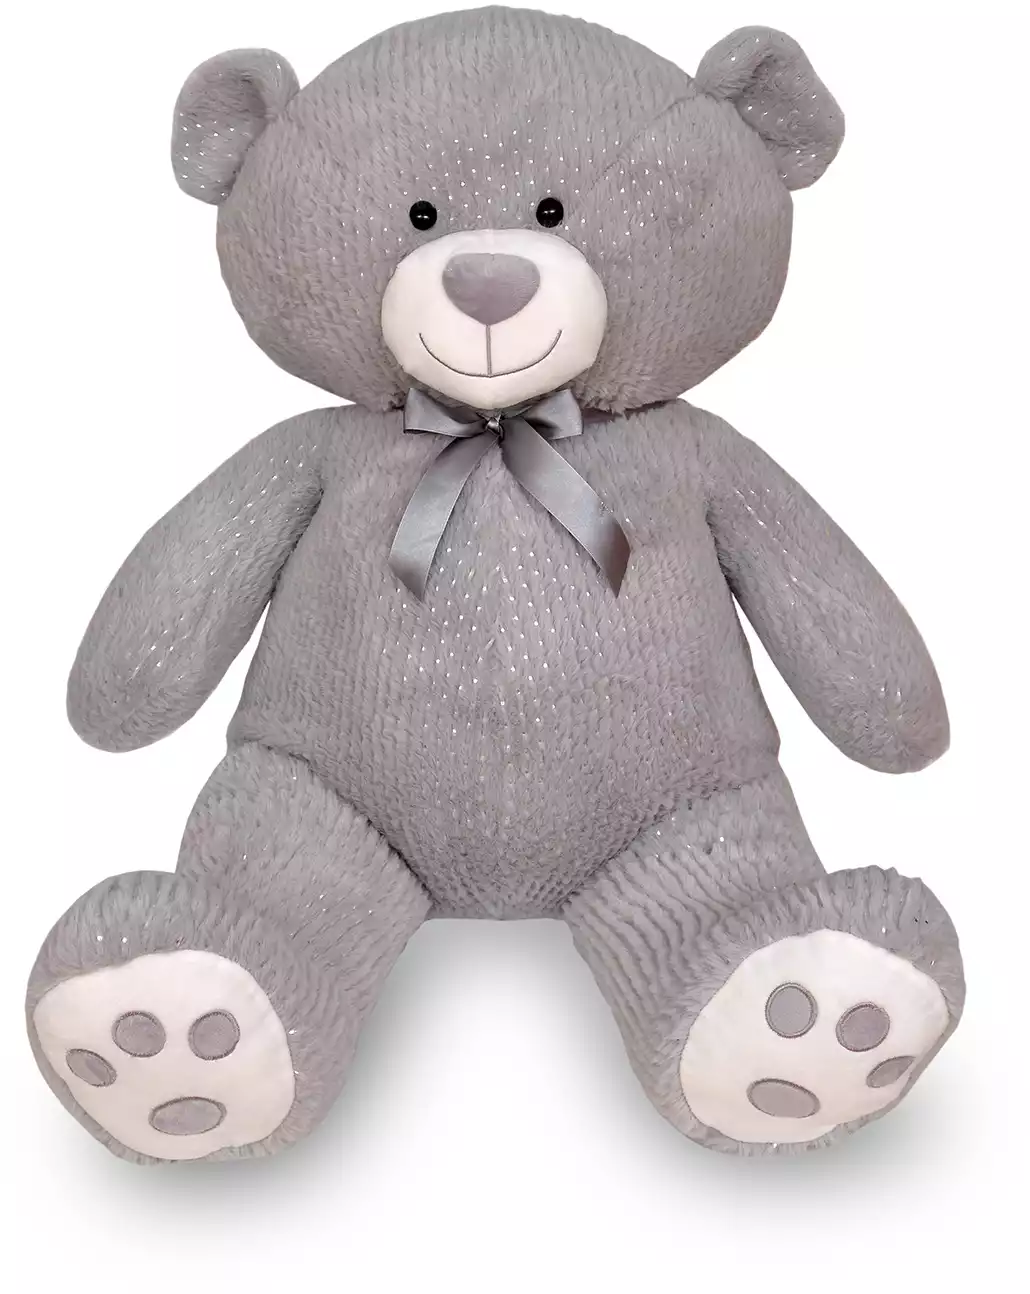 Медведь игрушка Изображения – скачать бесплатно на Freepik